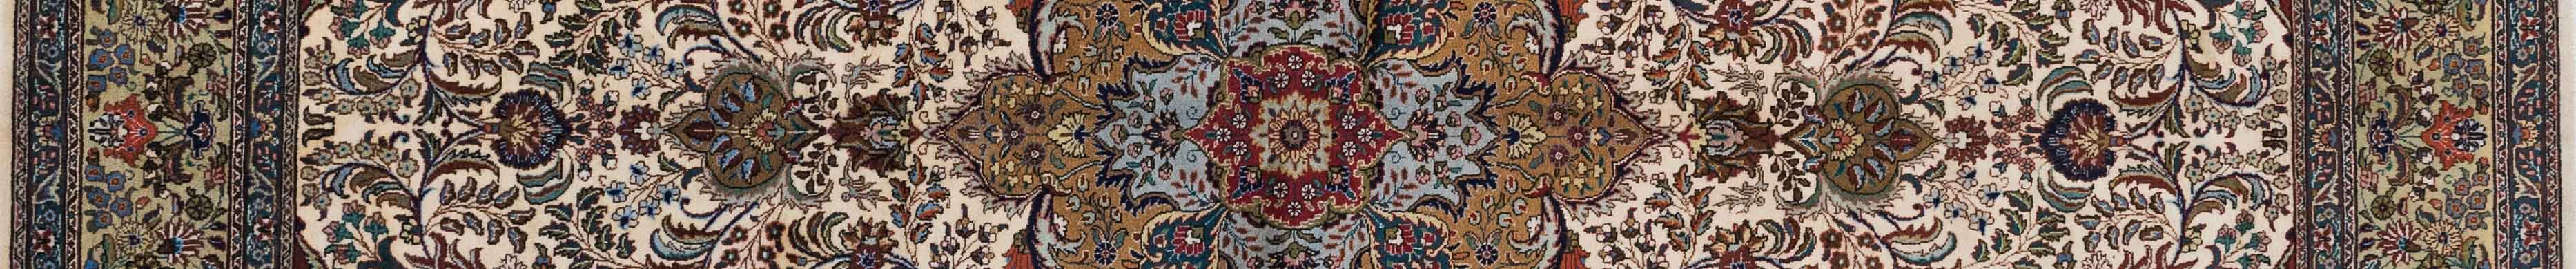 Tabriz Persian Carpet Rug N1Carpet Canada Montreal Tapis Persan 3900